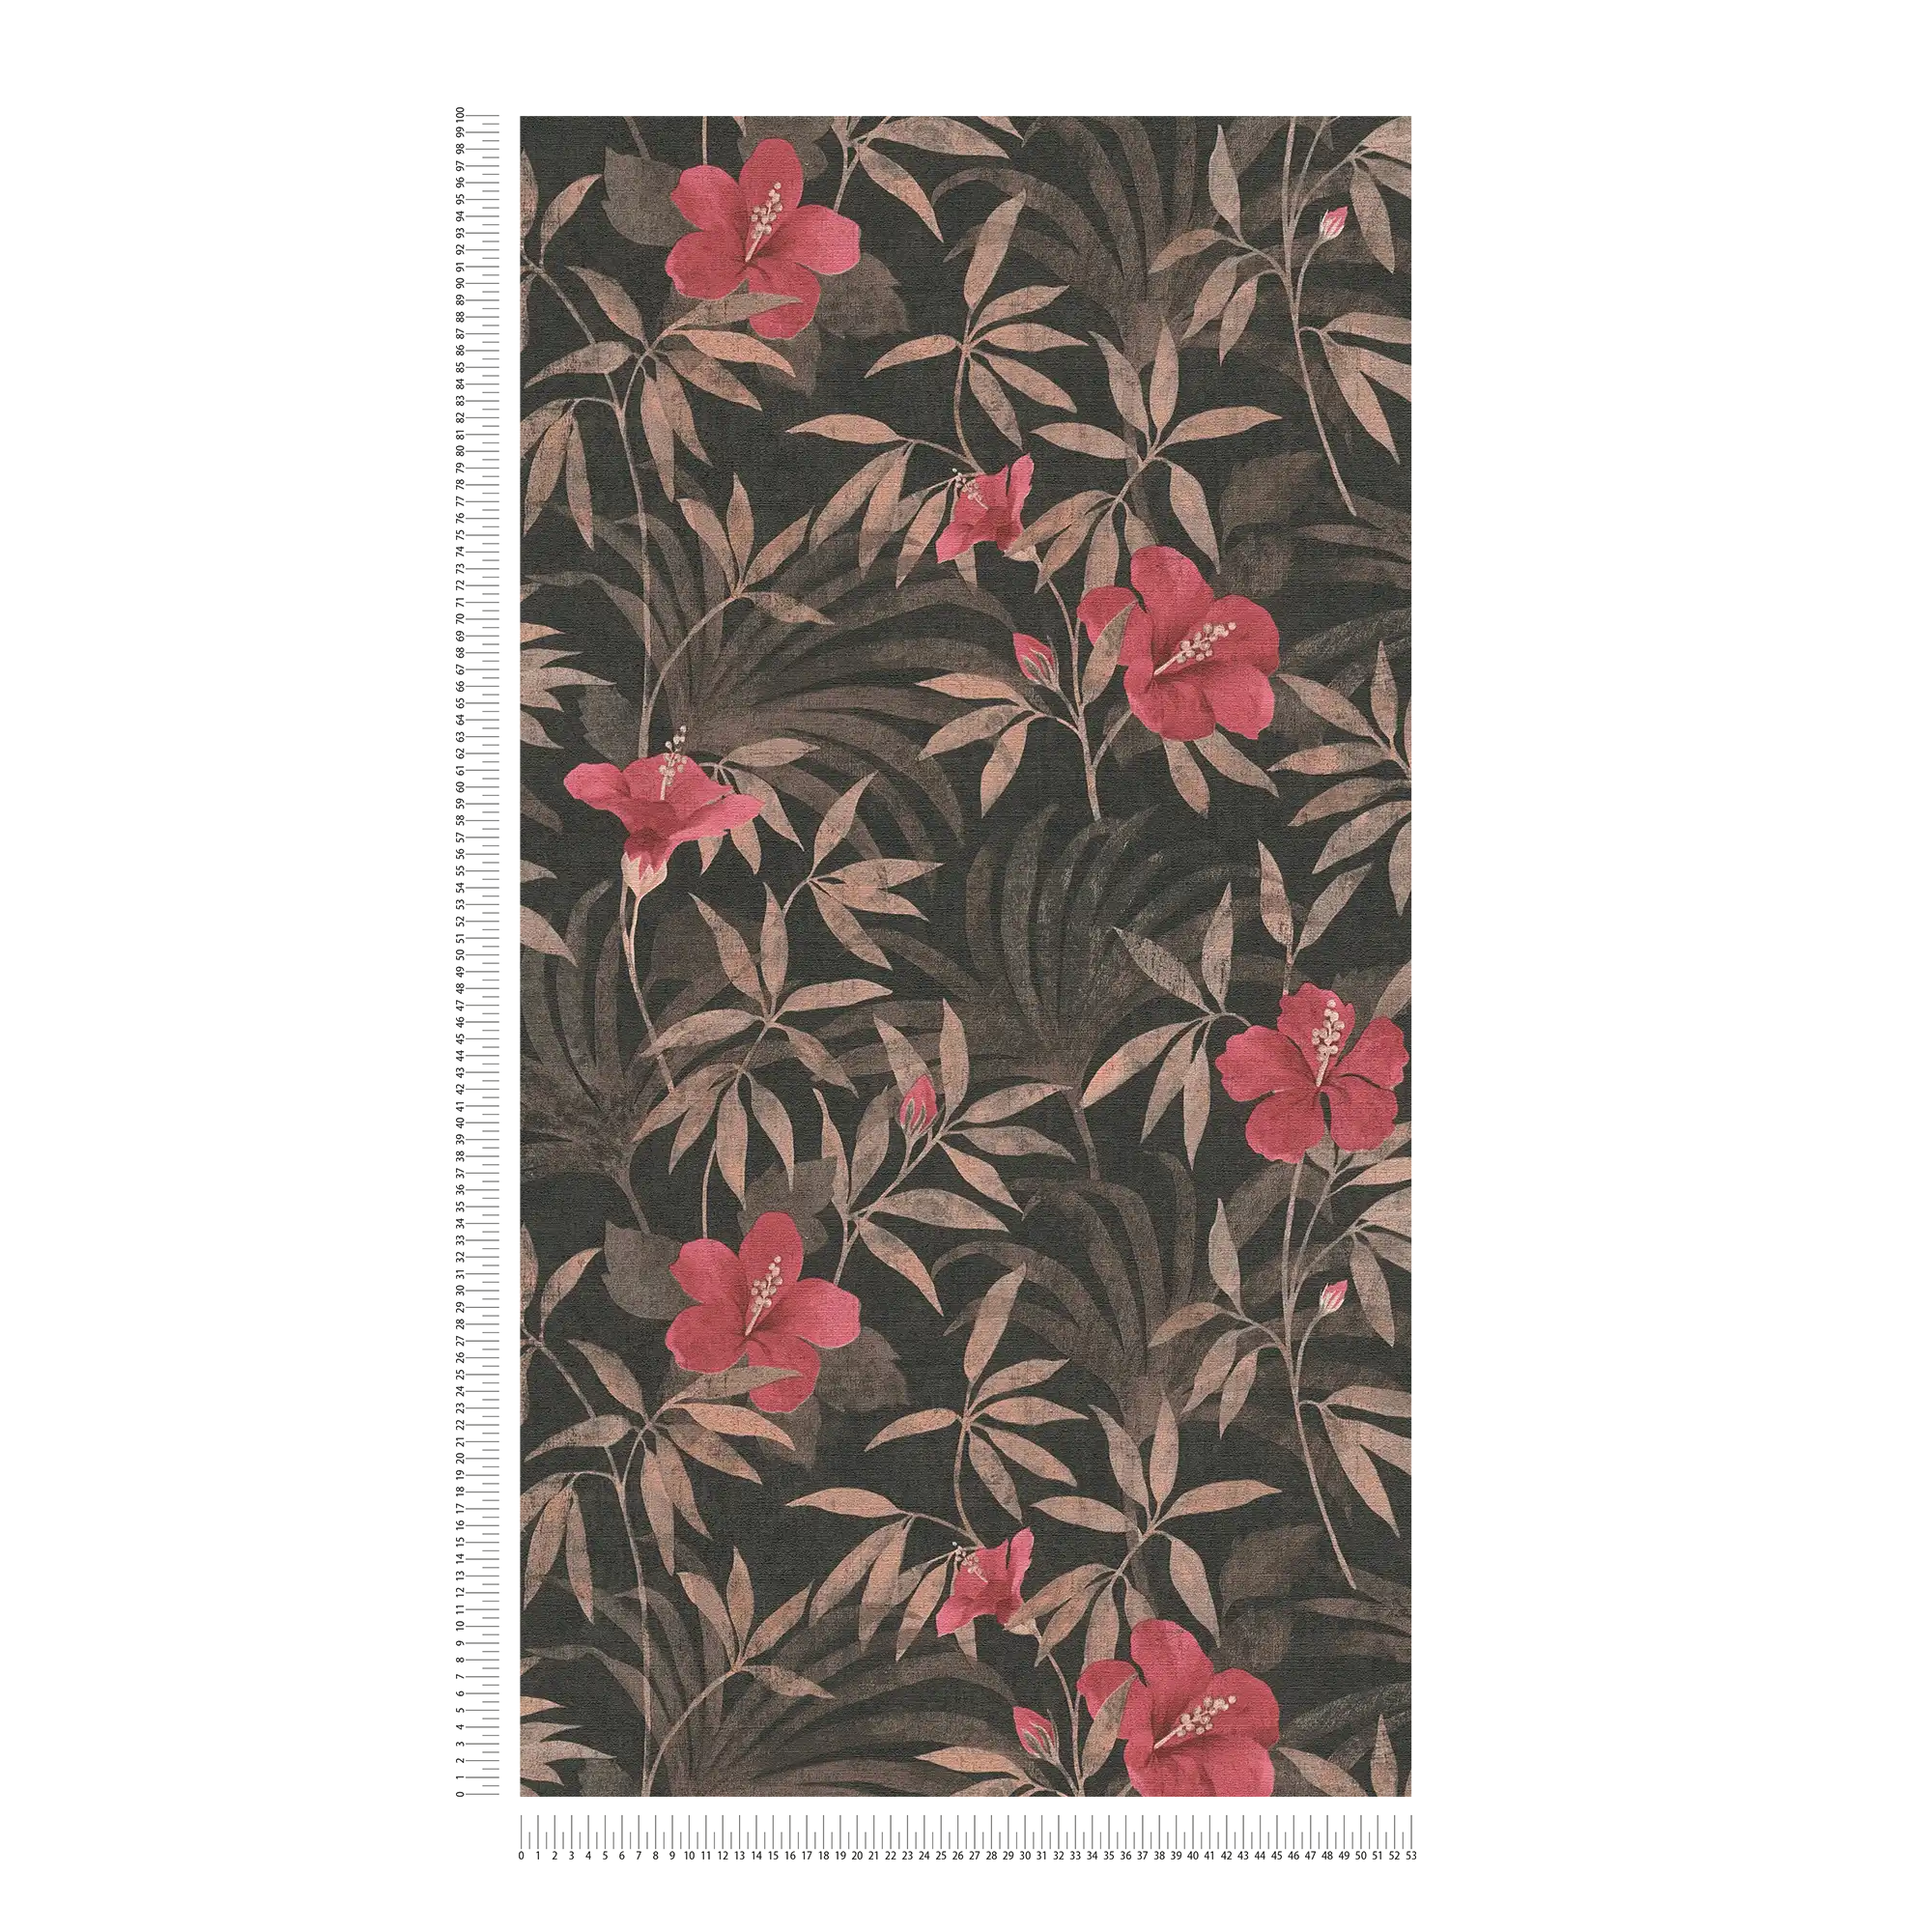             Papier peint Feuilles de jungle & fleurs d'hibiscus - marron, rouge
        